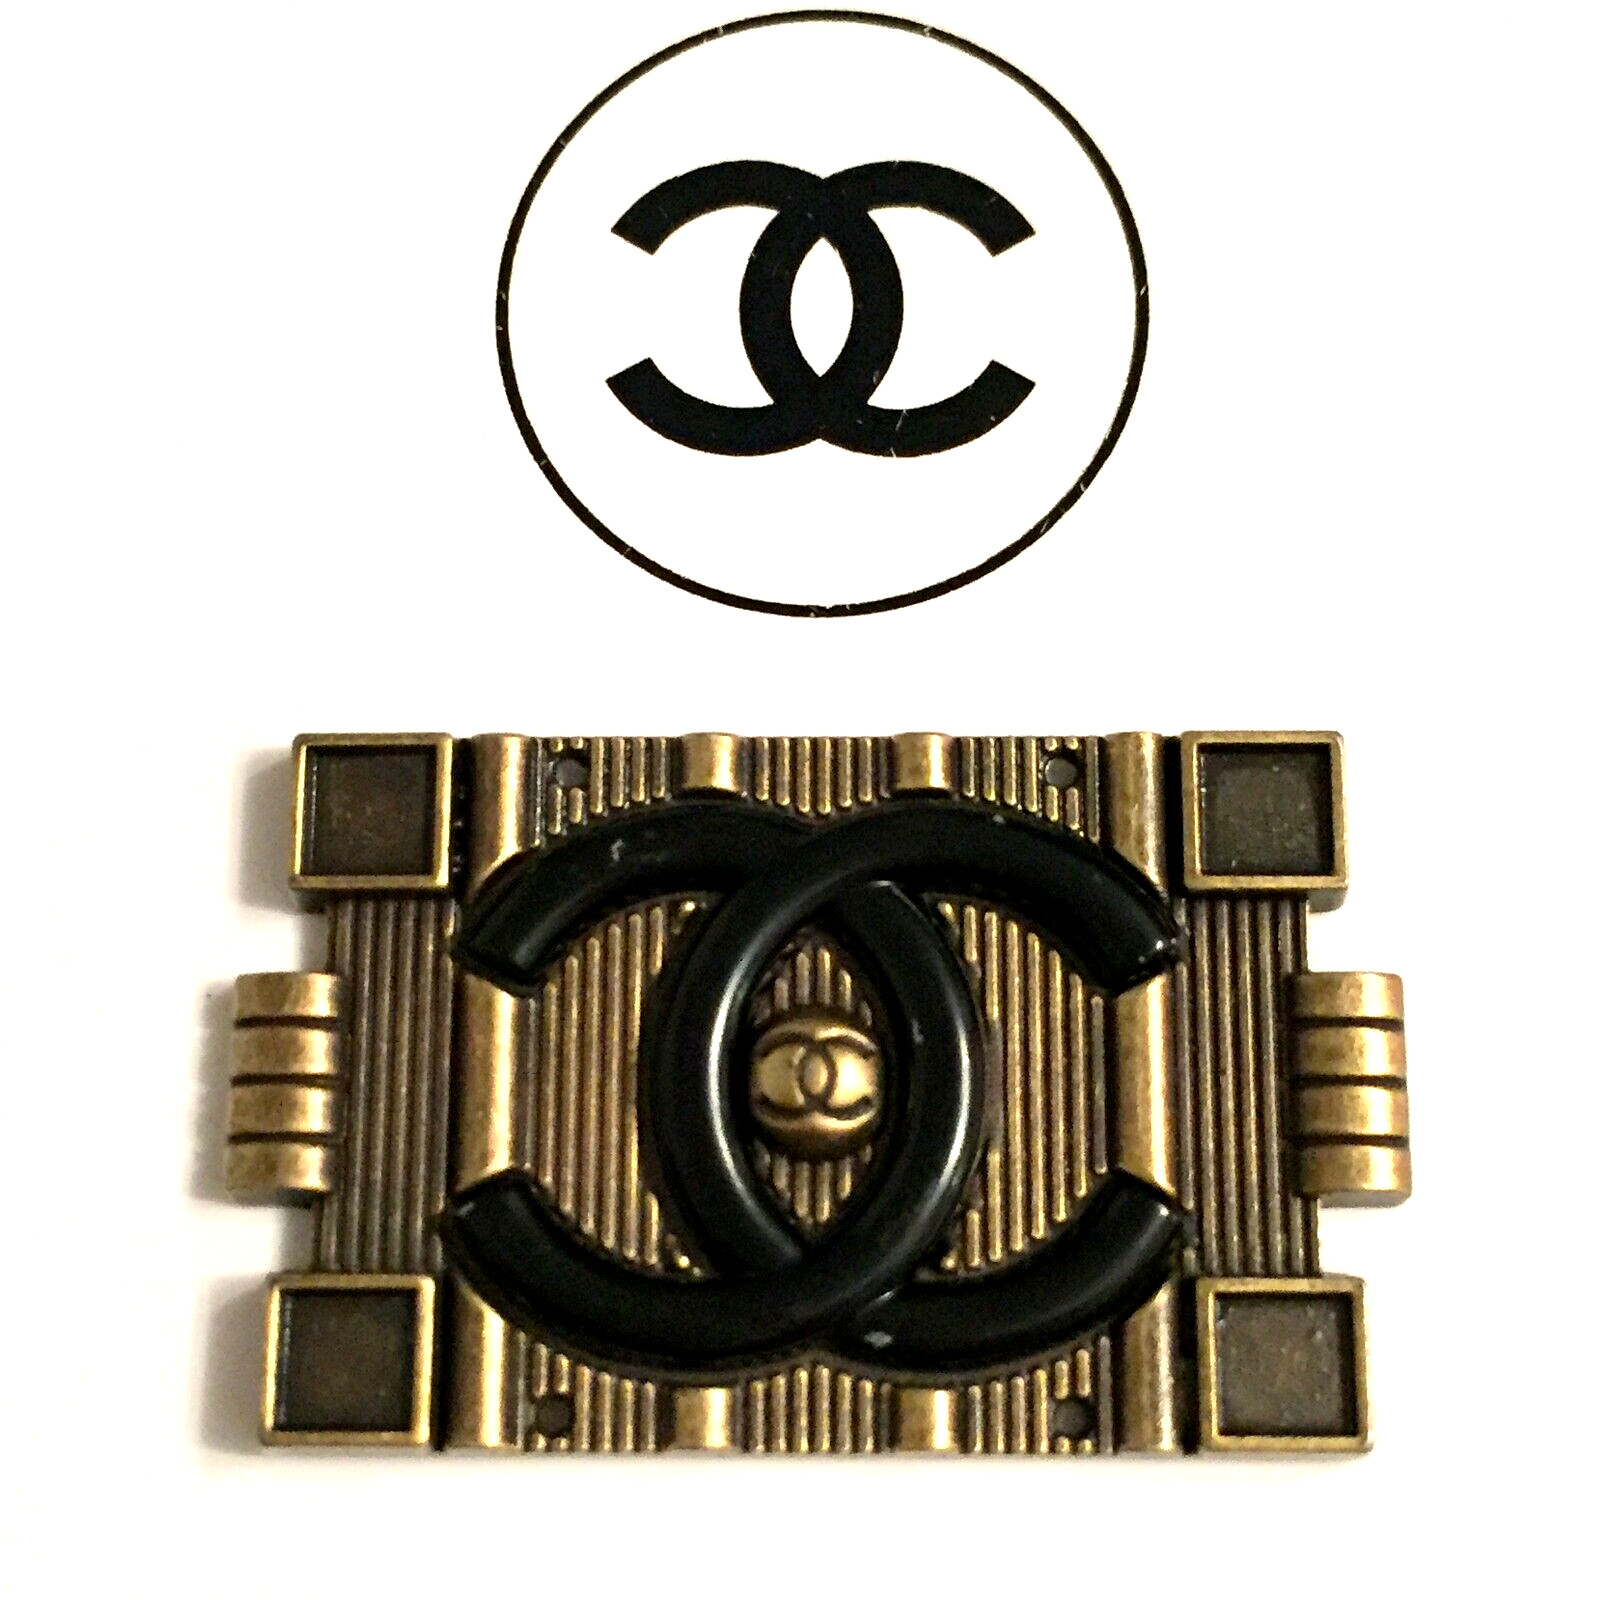 1 Vintage original large 27 mm x 45 mm Chanel CC Logo bronze tone Button Zipper